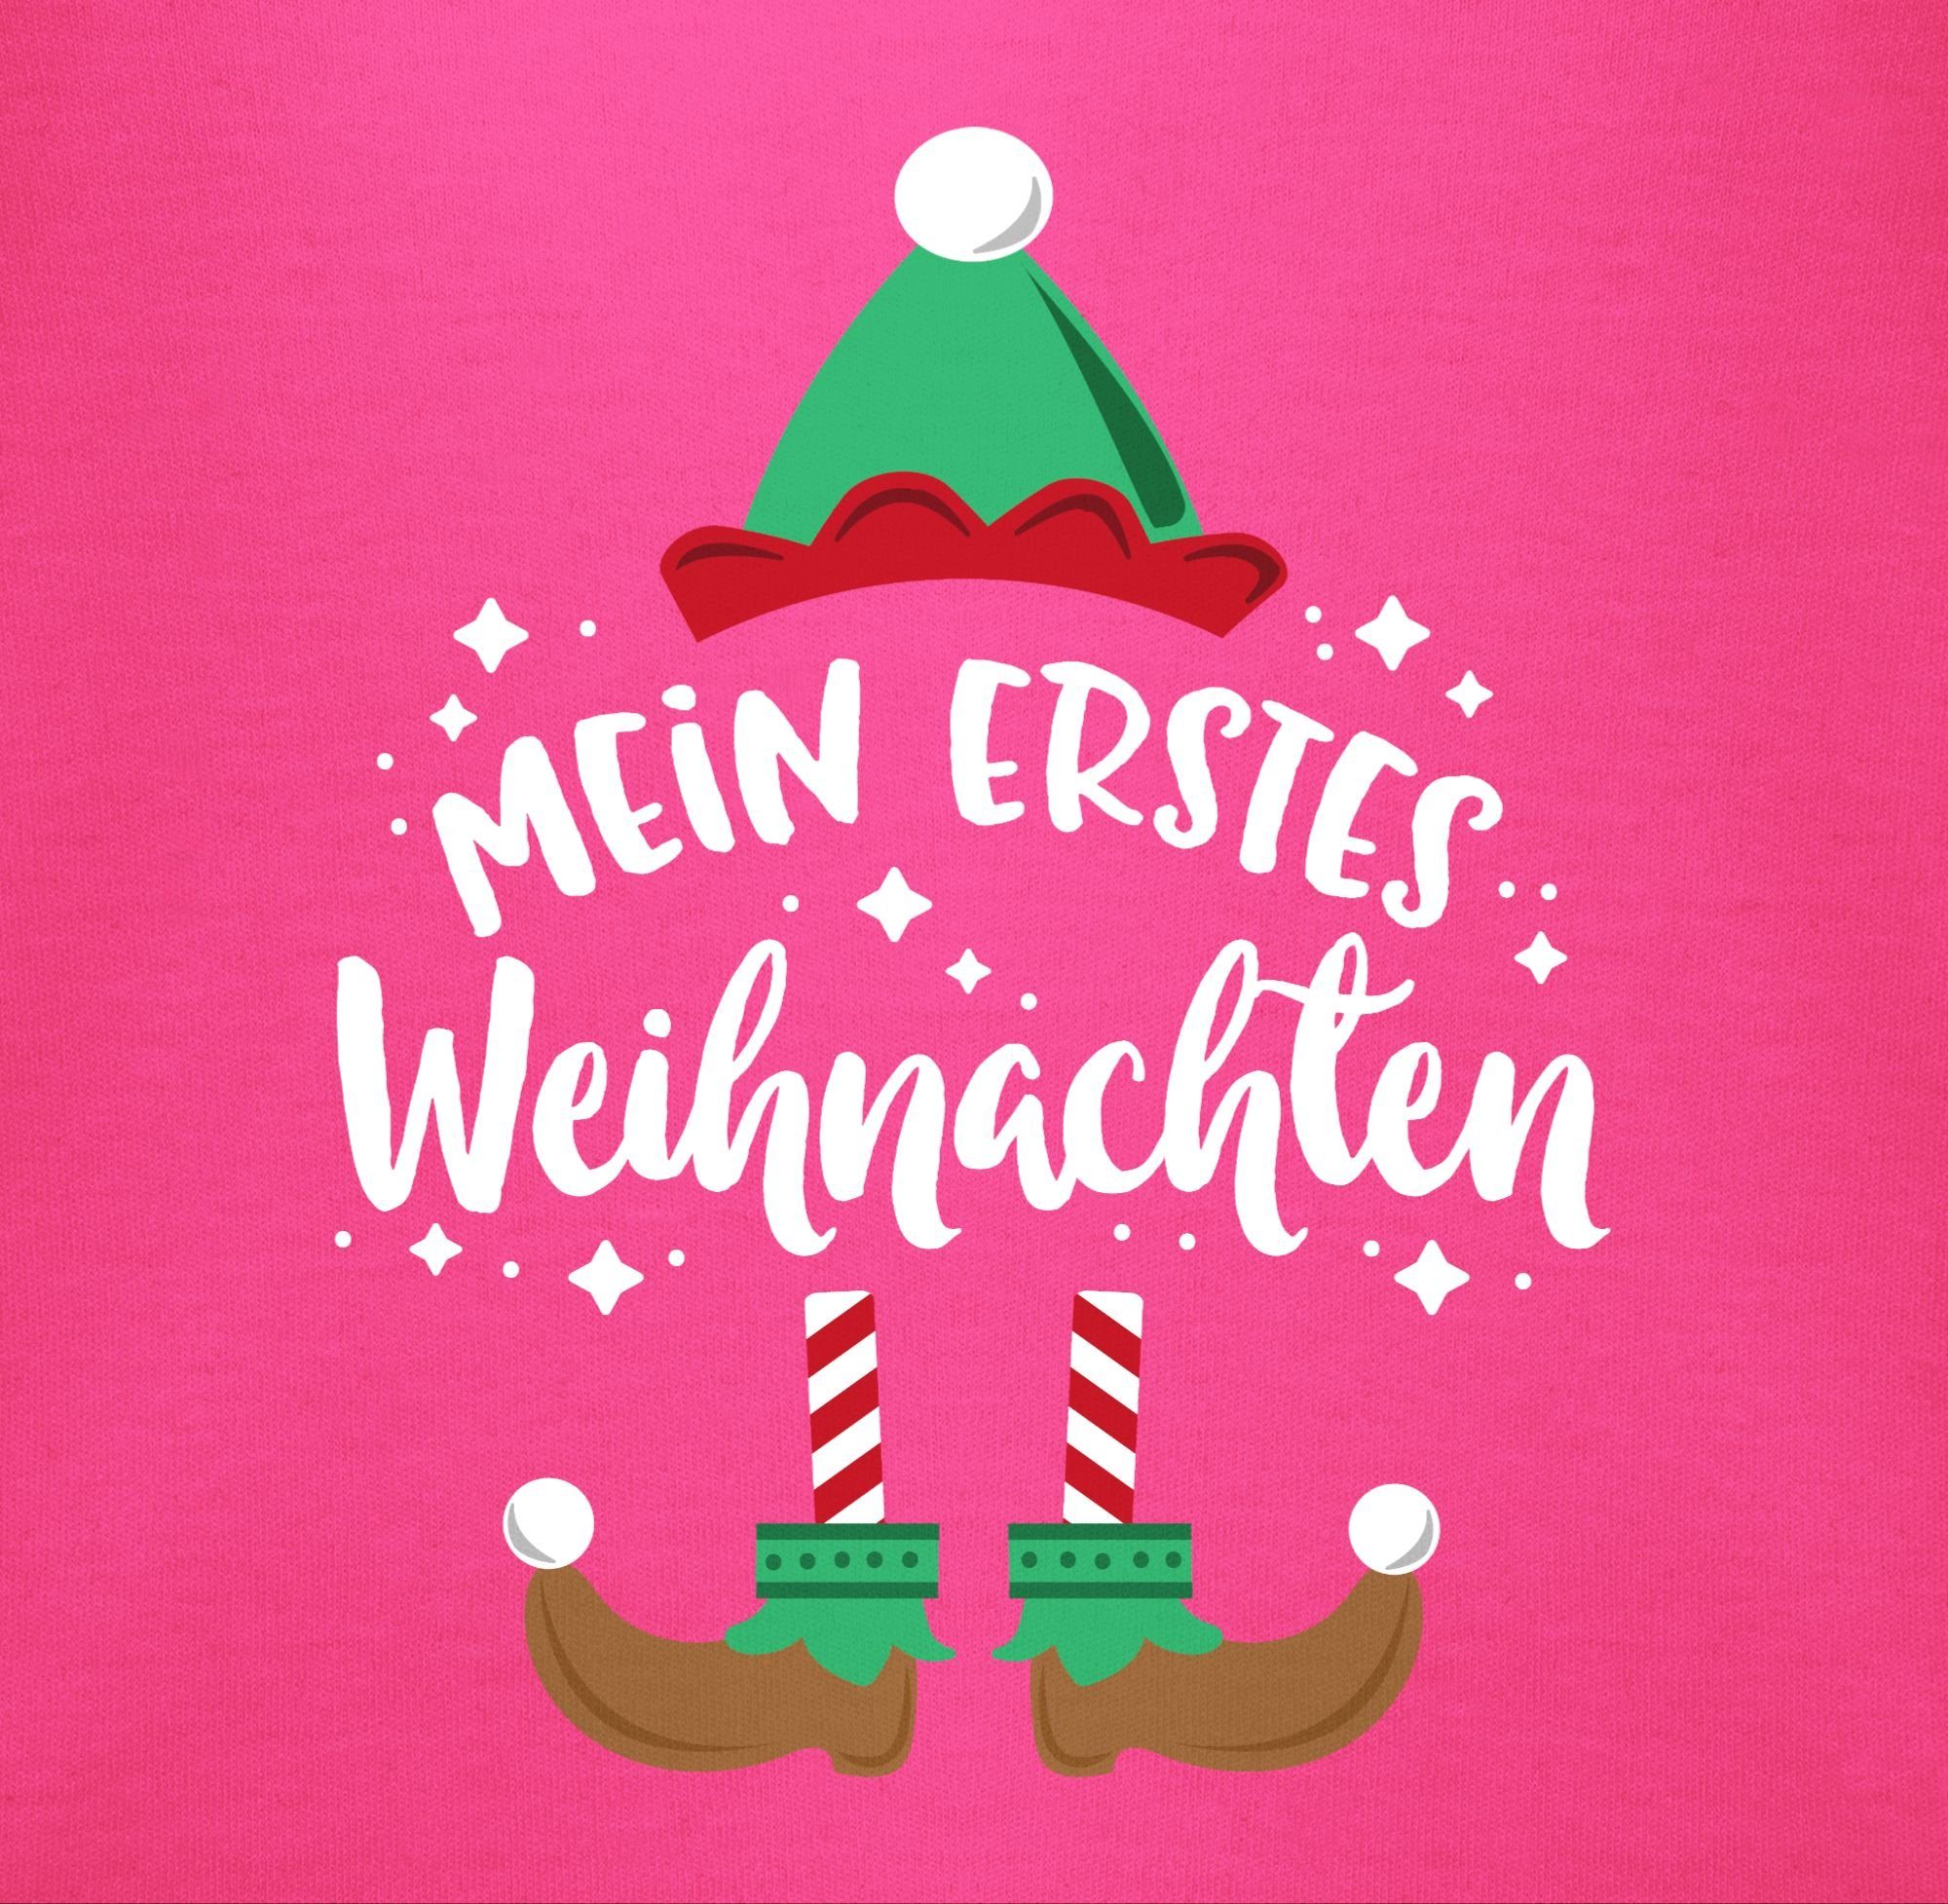 Baby Shirtracer Fuchsia Shirtbody Weihnachten - erstes Weihnachten Mein weiß Kleidung 3